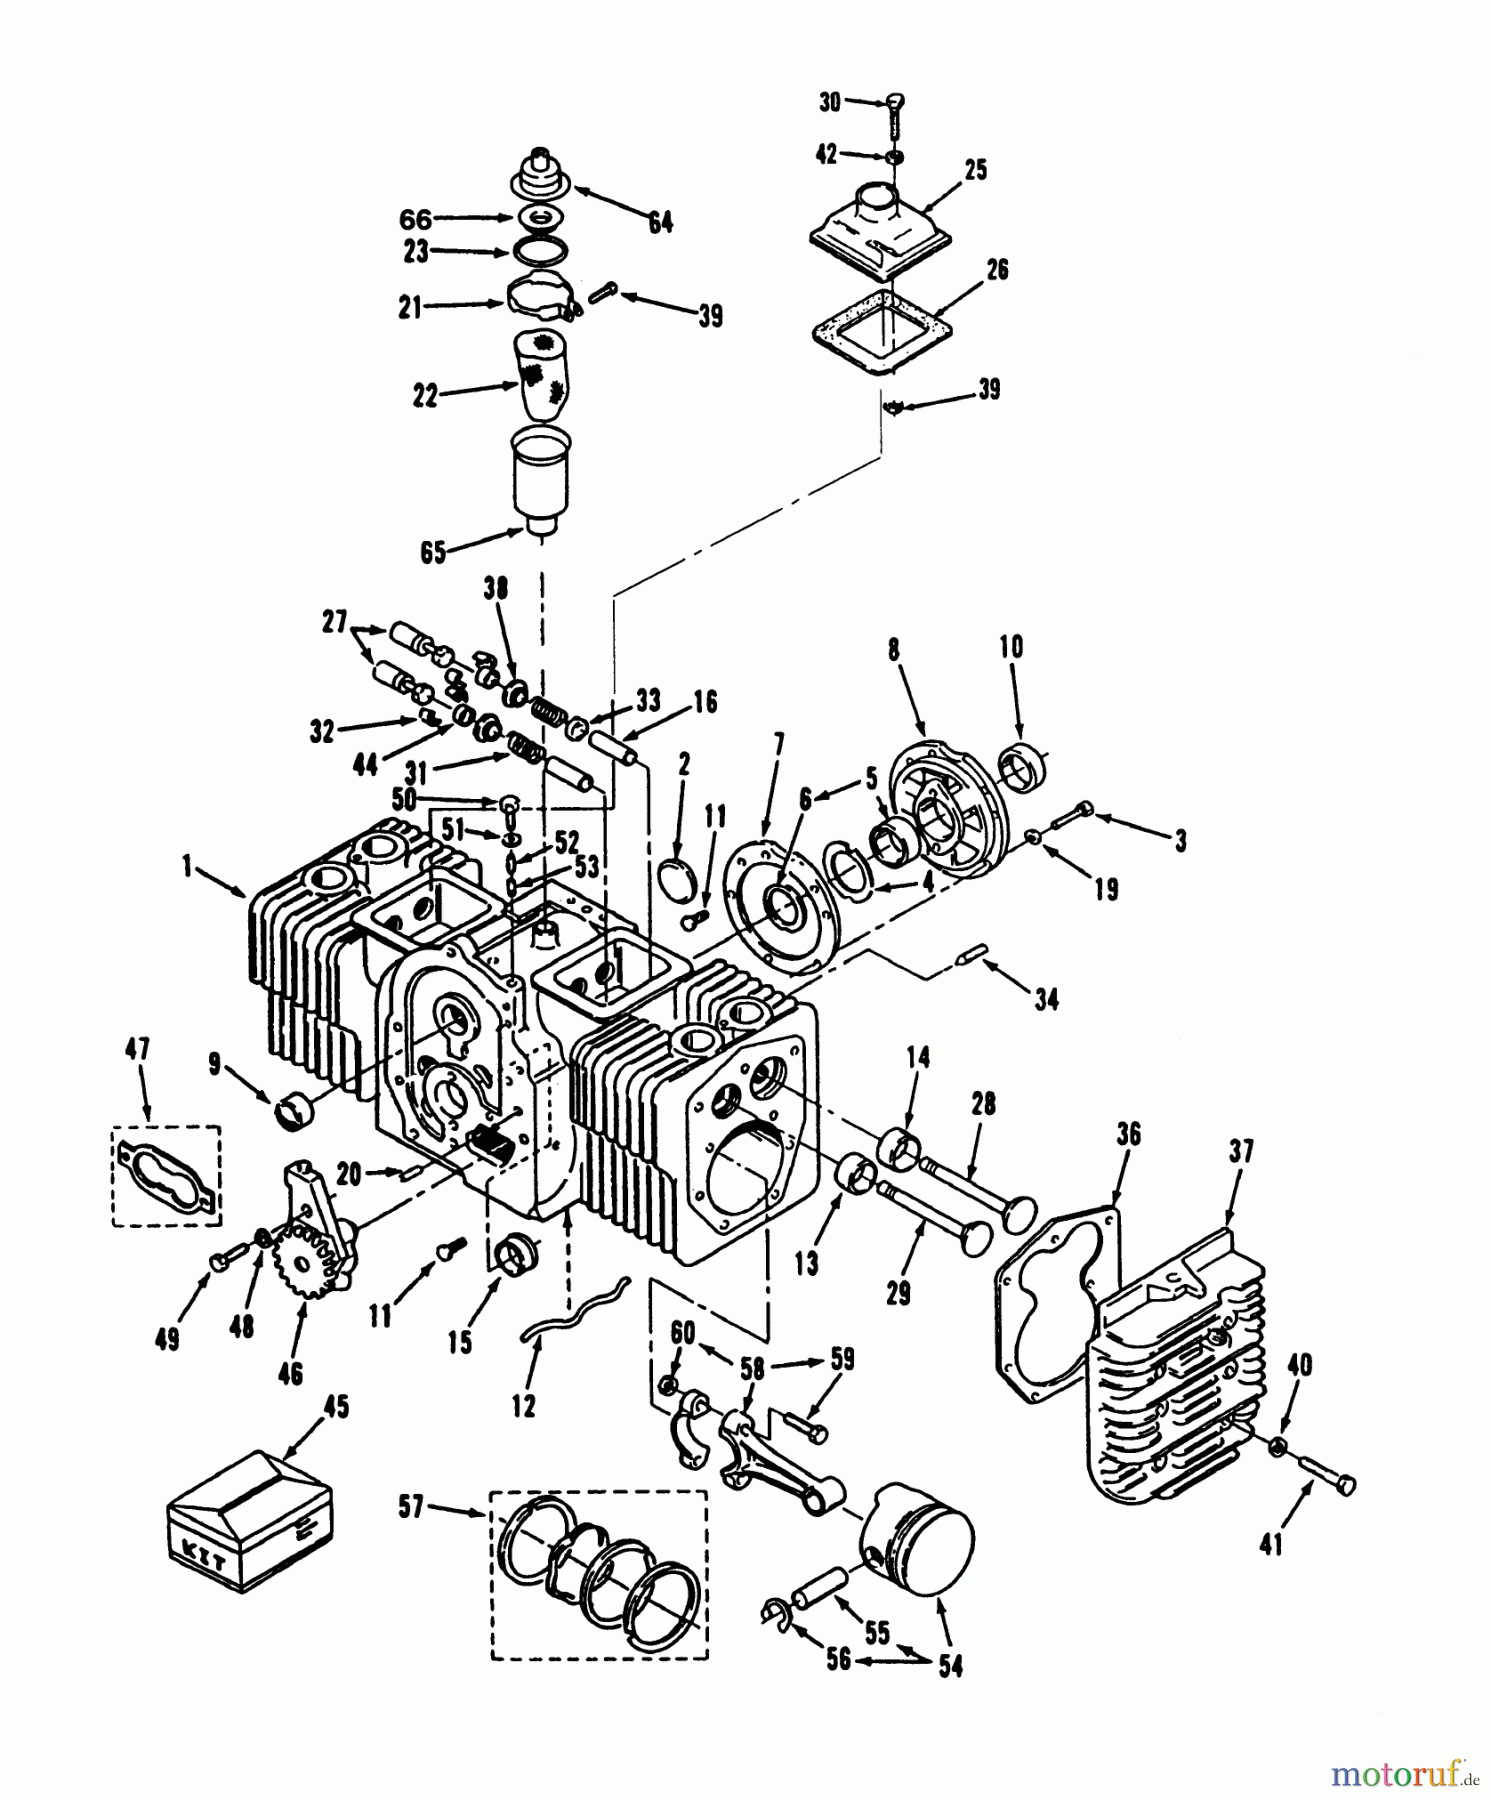  Toro Neu Mowers, Lawn & Garden Tractor Seite 2 R1-16O804 (316-8) - Toro 316-8 Garden Tractor, 1992 (2000001-2999999) ENGINE POWER PLUS CYLINDER BLOCK